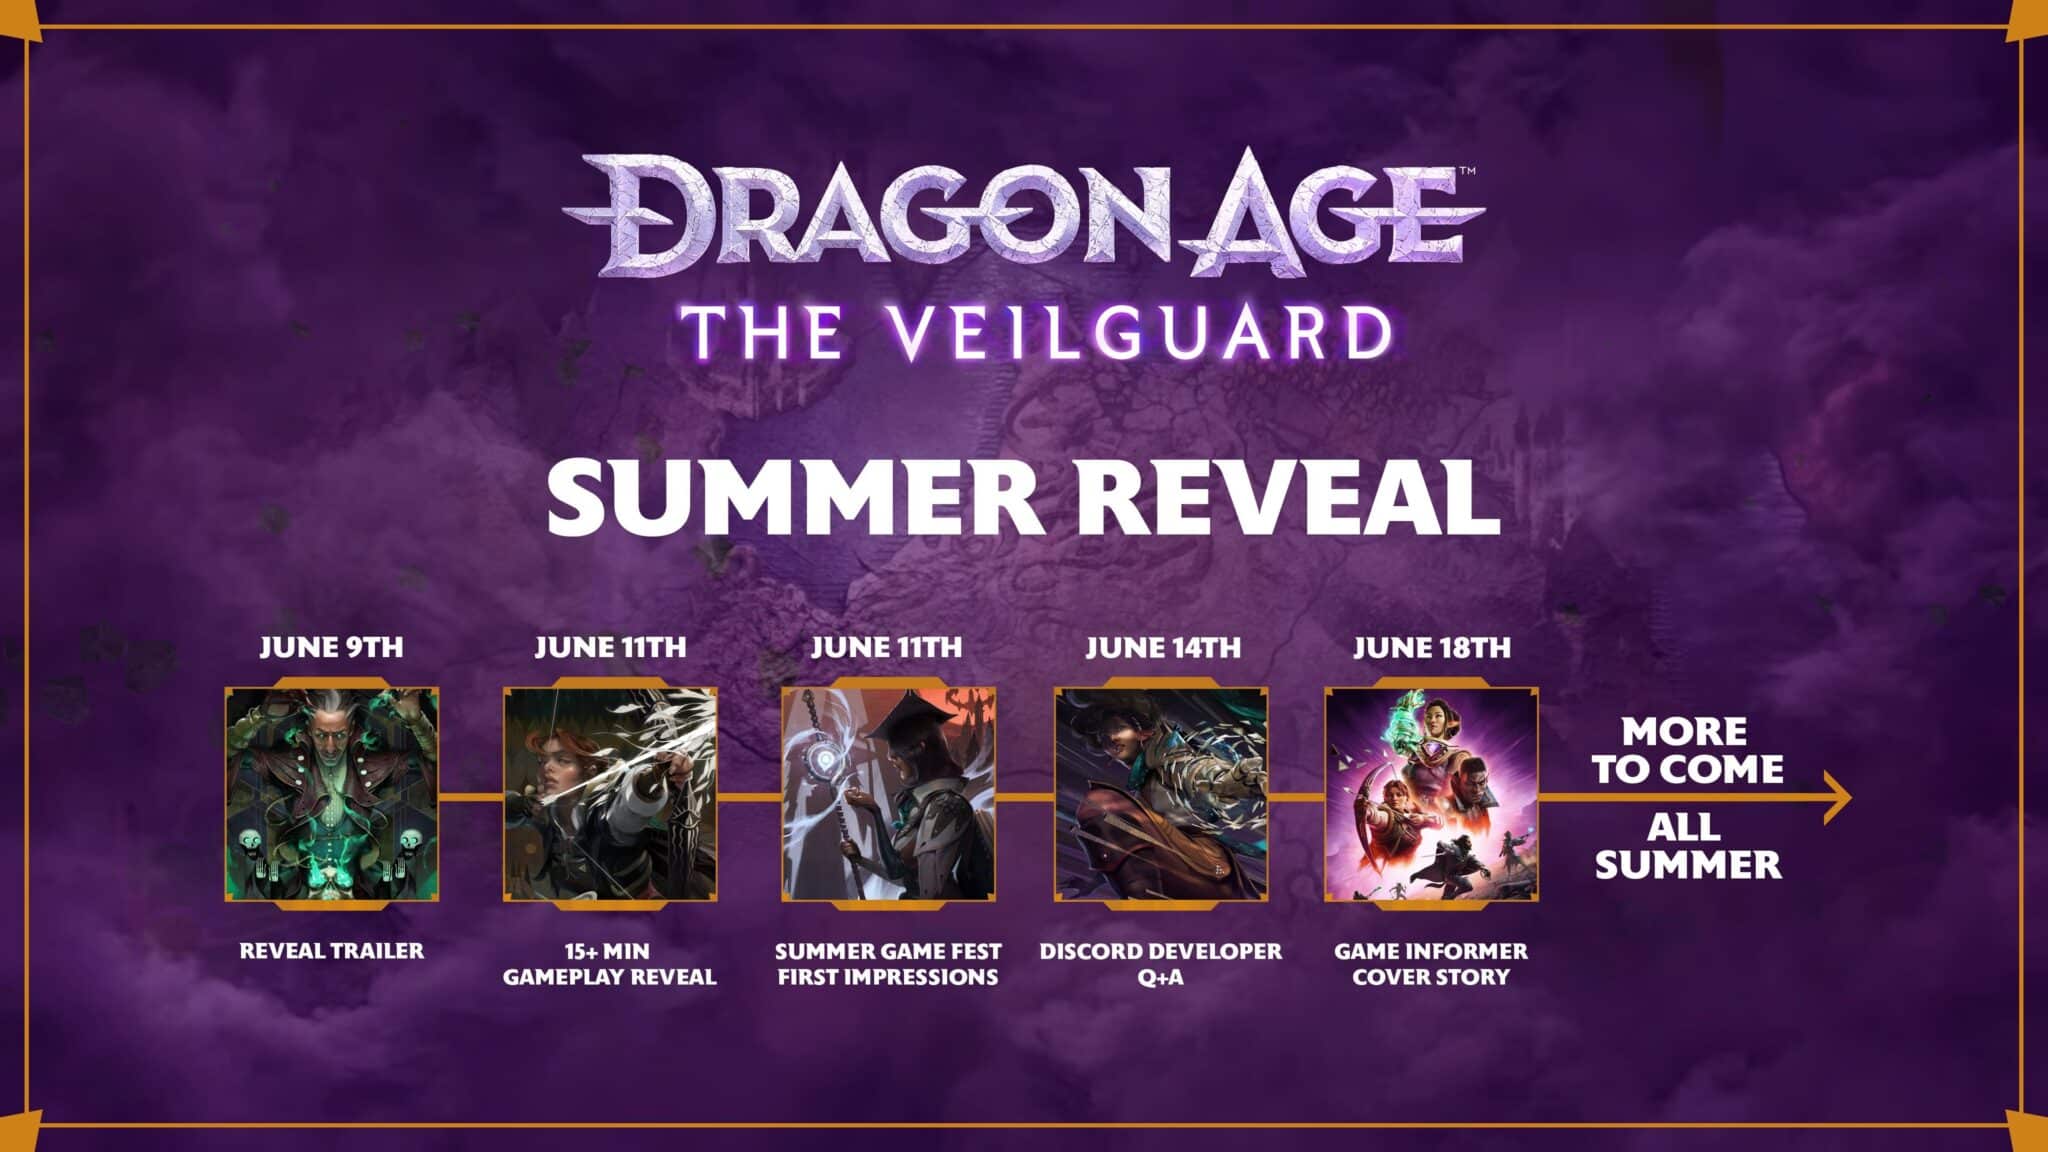  (Podle všeho se v následujících dnech můžete těšit na spoustu nových informací o hře Dragon Age: The Veilguard).